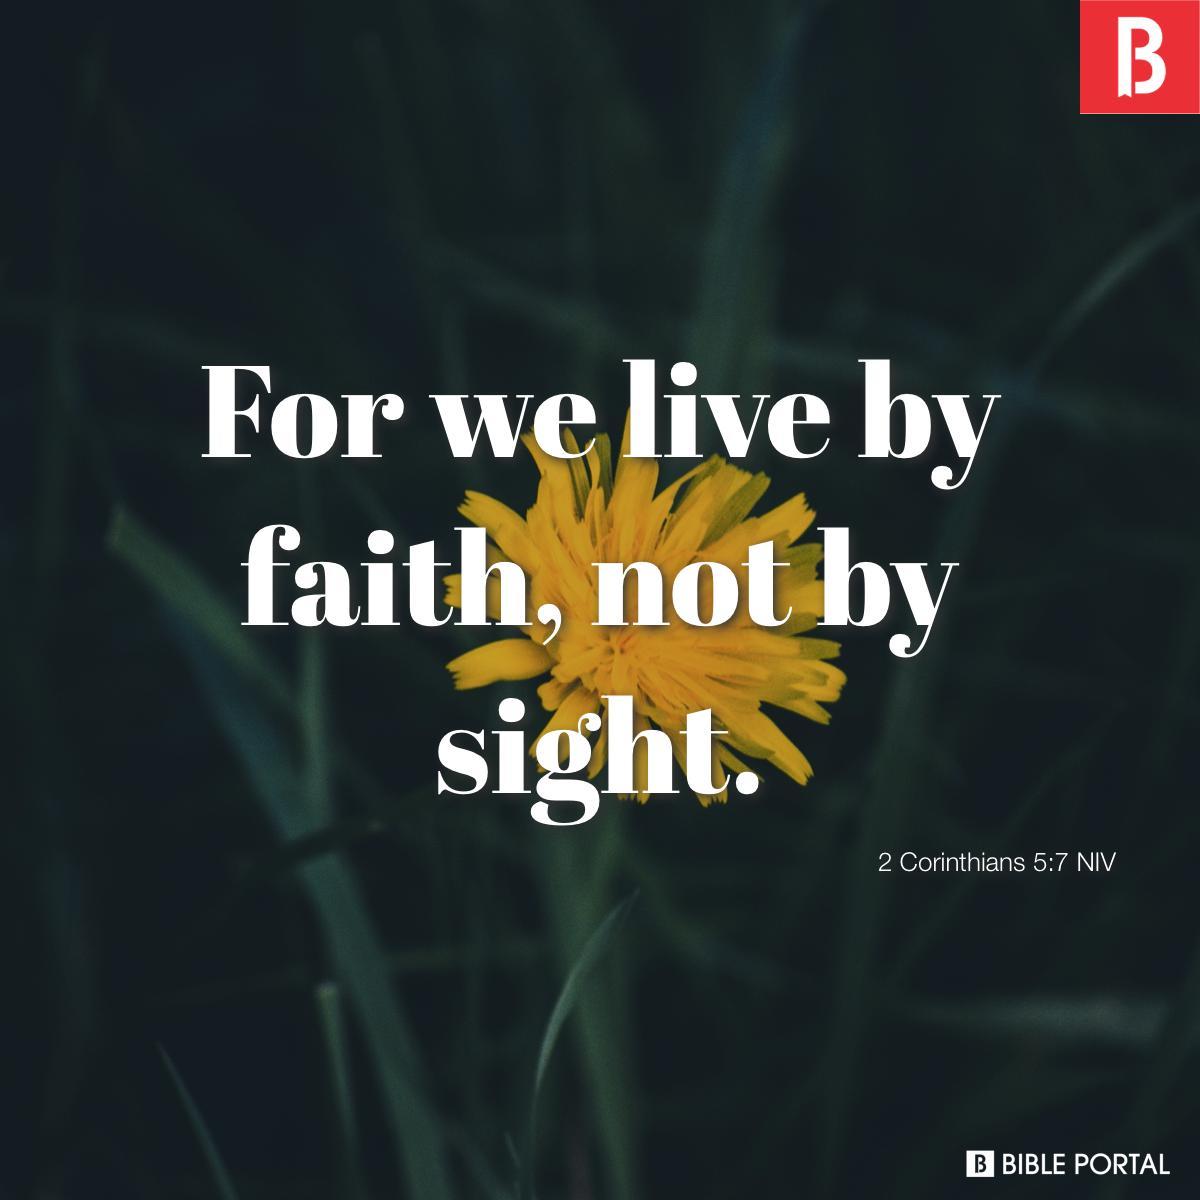 2 Corinthians 5:7 NIV